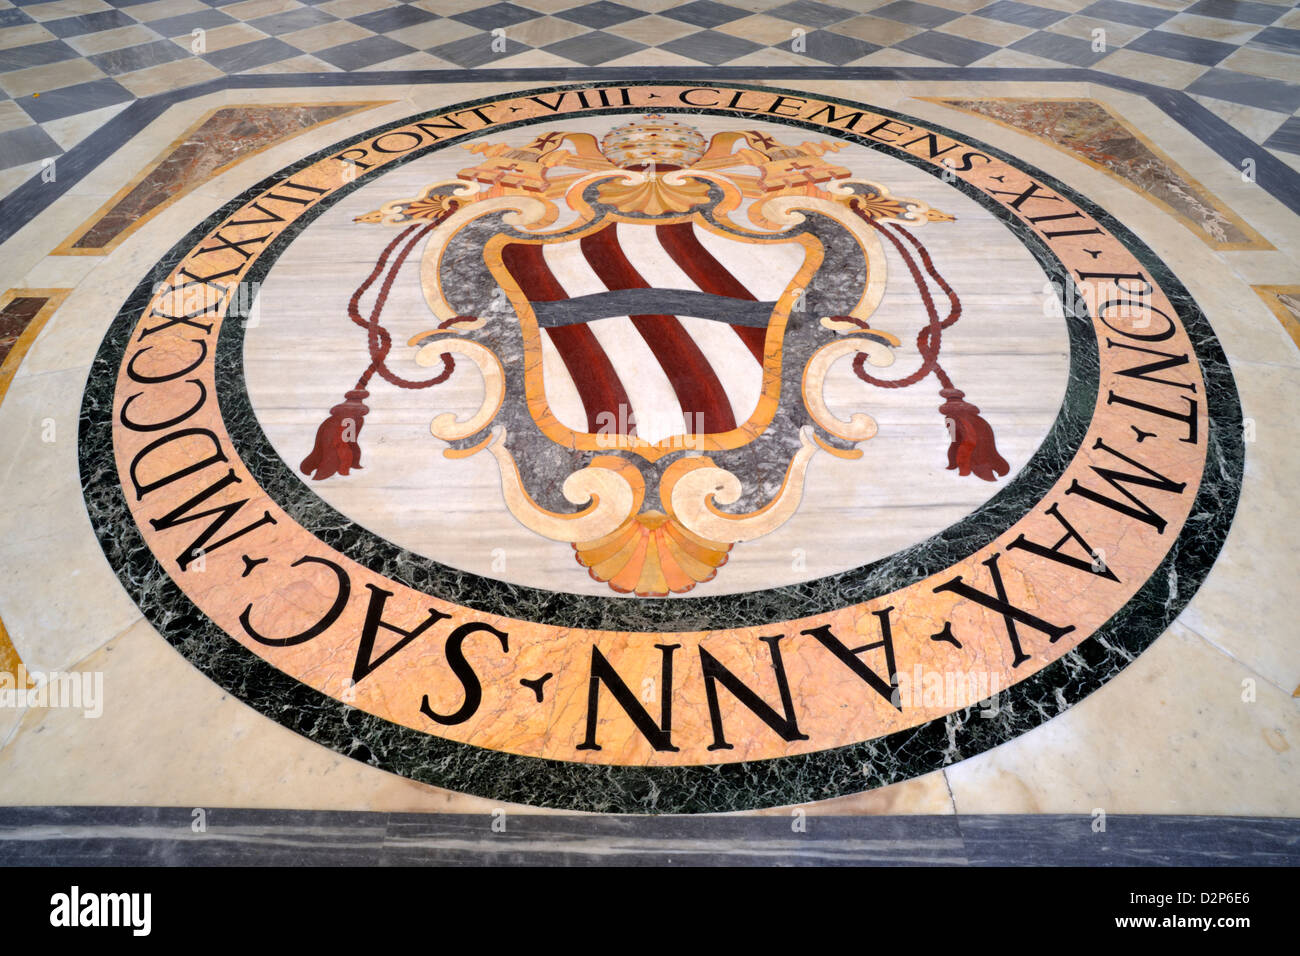 Italia, Roma, basilica di San Giovanni in Laterano, ingresso, stemma papale sul pavimento Foto Stock